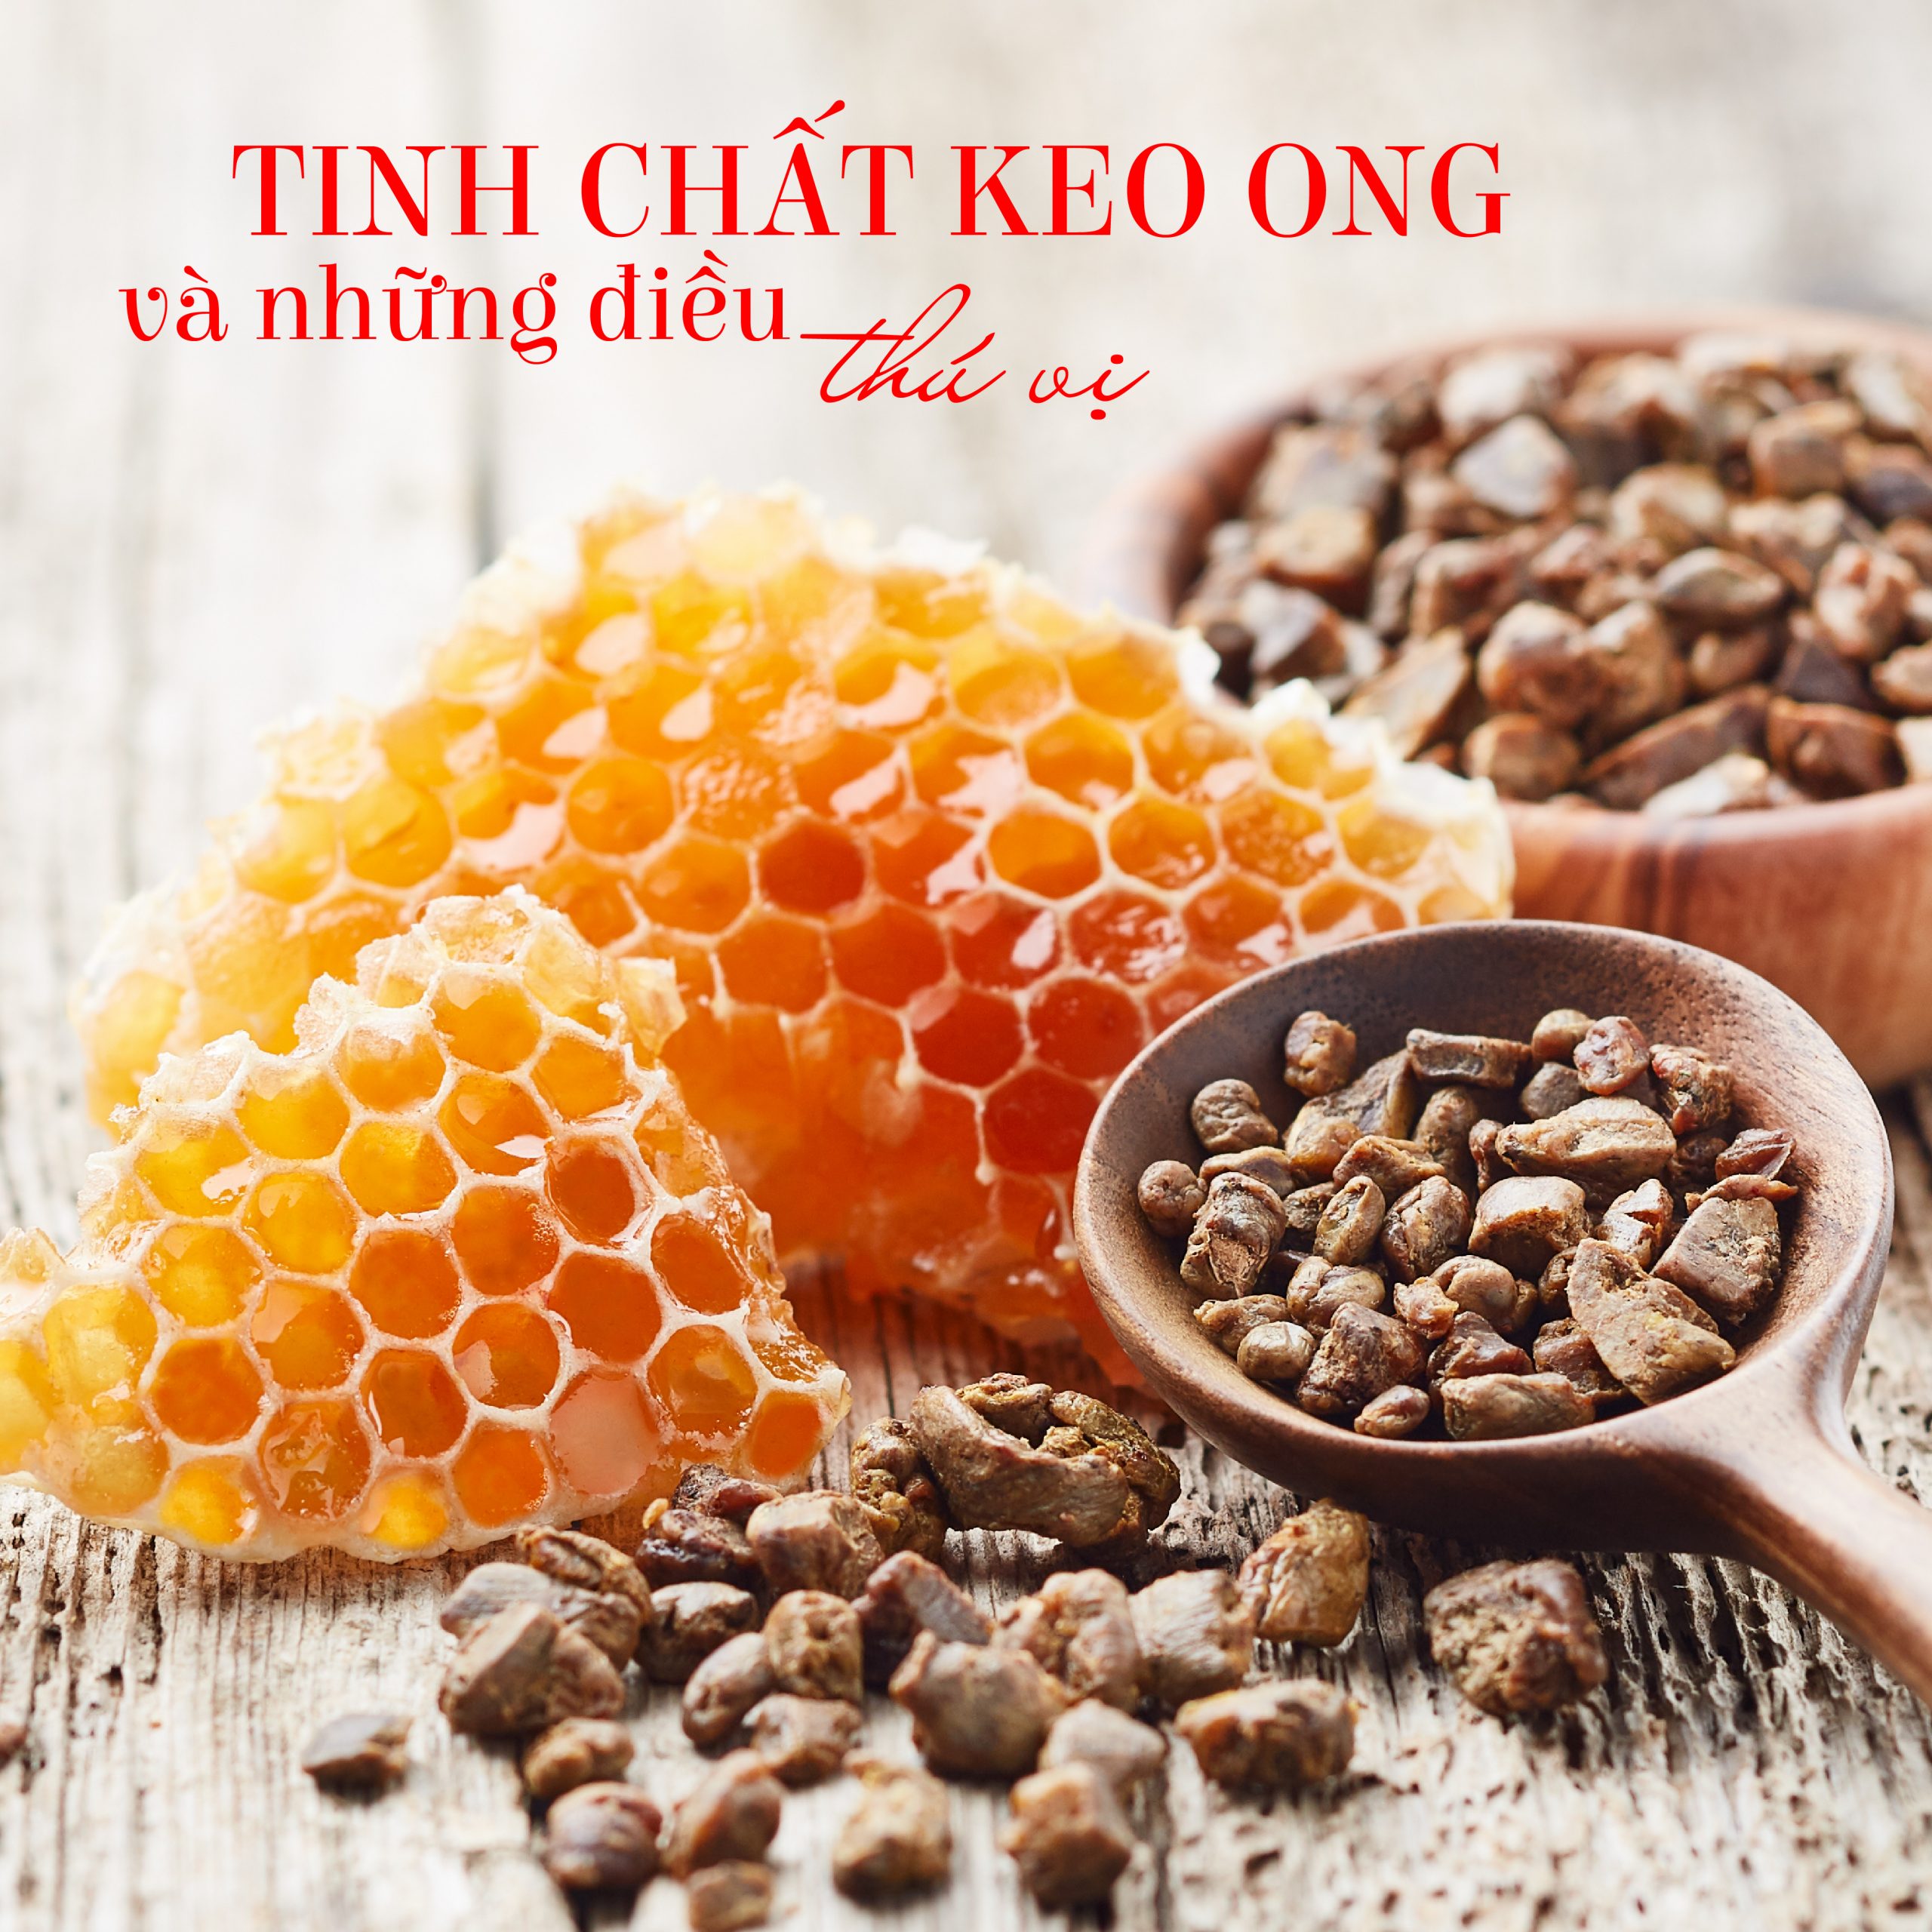 Tinh chất keo ong và những điều thú vị có thể bạn chưa biết?